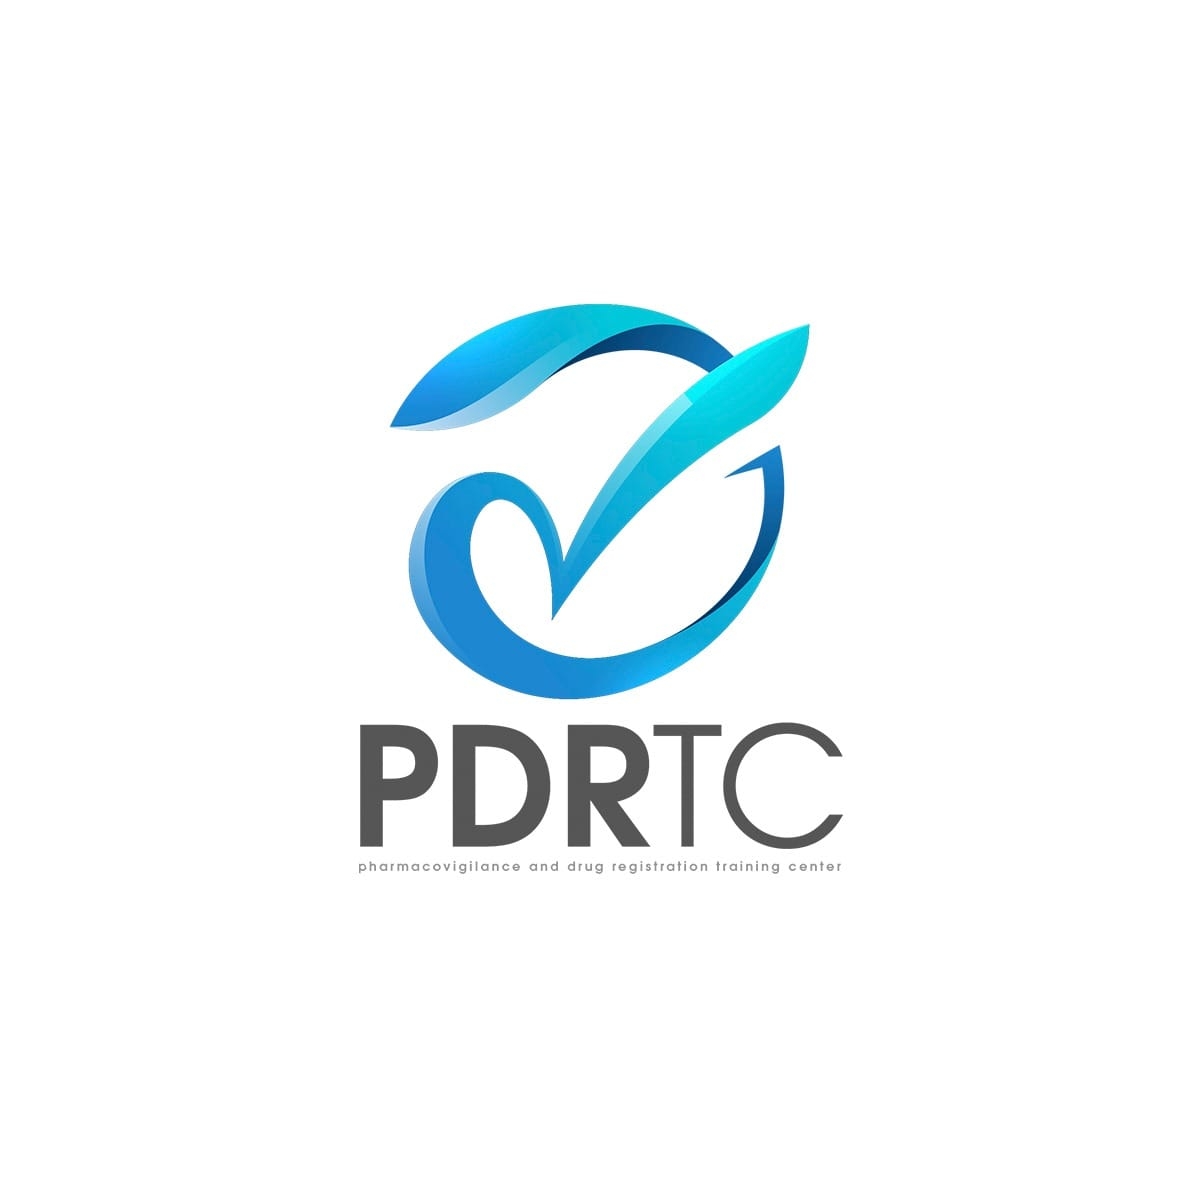 PDRTC company